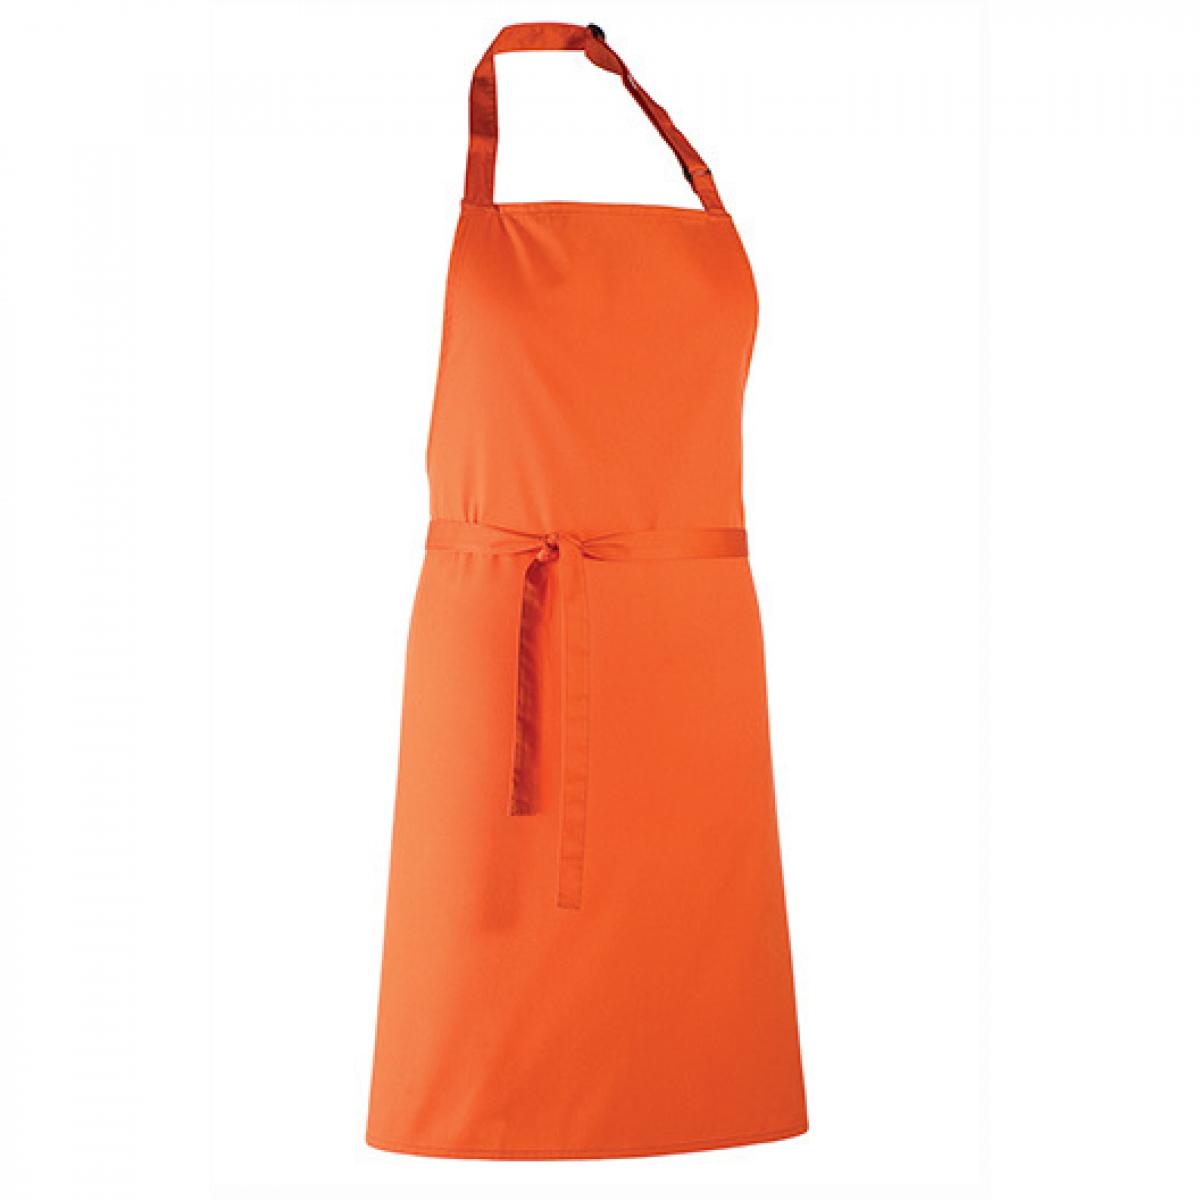 Hersteller: Premier Workwear Herstellernummer: PR150 Artikelbezeichnung: Latzschürze ´Colours´ - Waschbar bei 60 °C Farbe: Orange (ca. Pantone 1655)